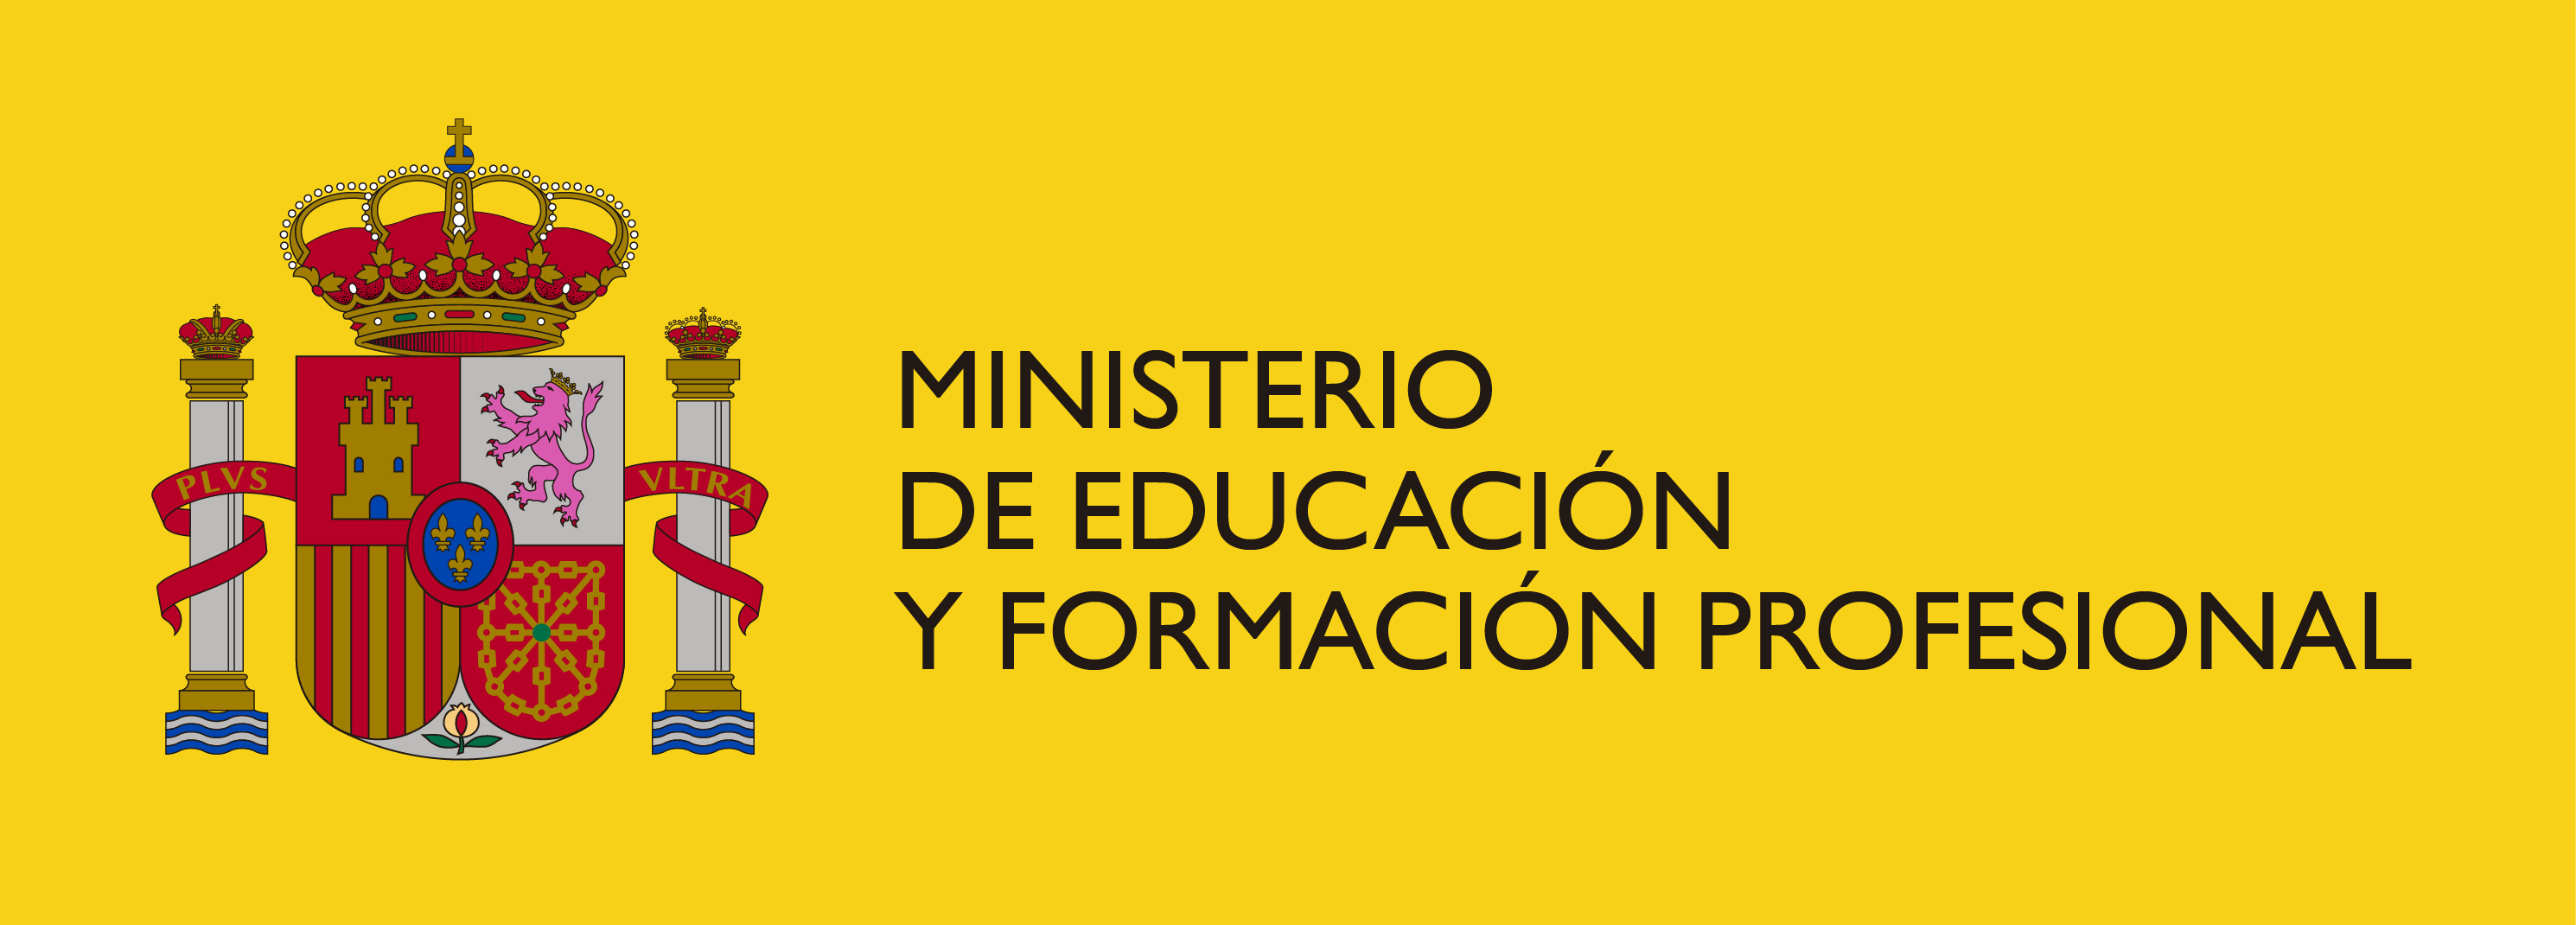 MINISTERIO DE EDUCACION Y FORMACION PROFESIONAL